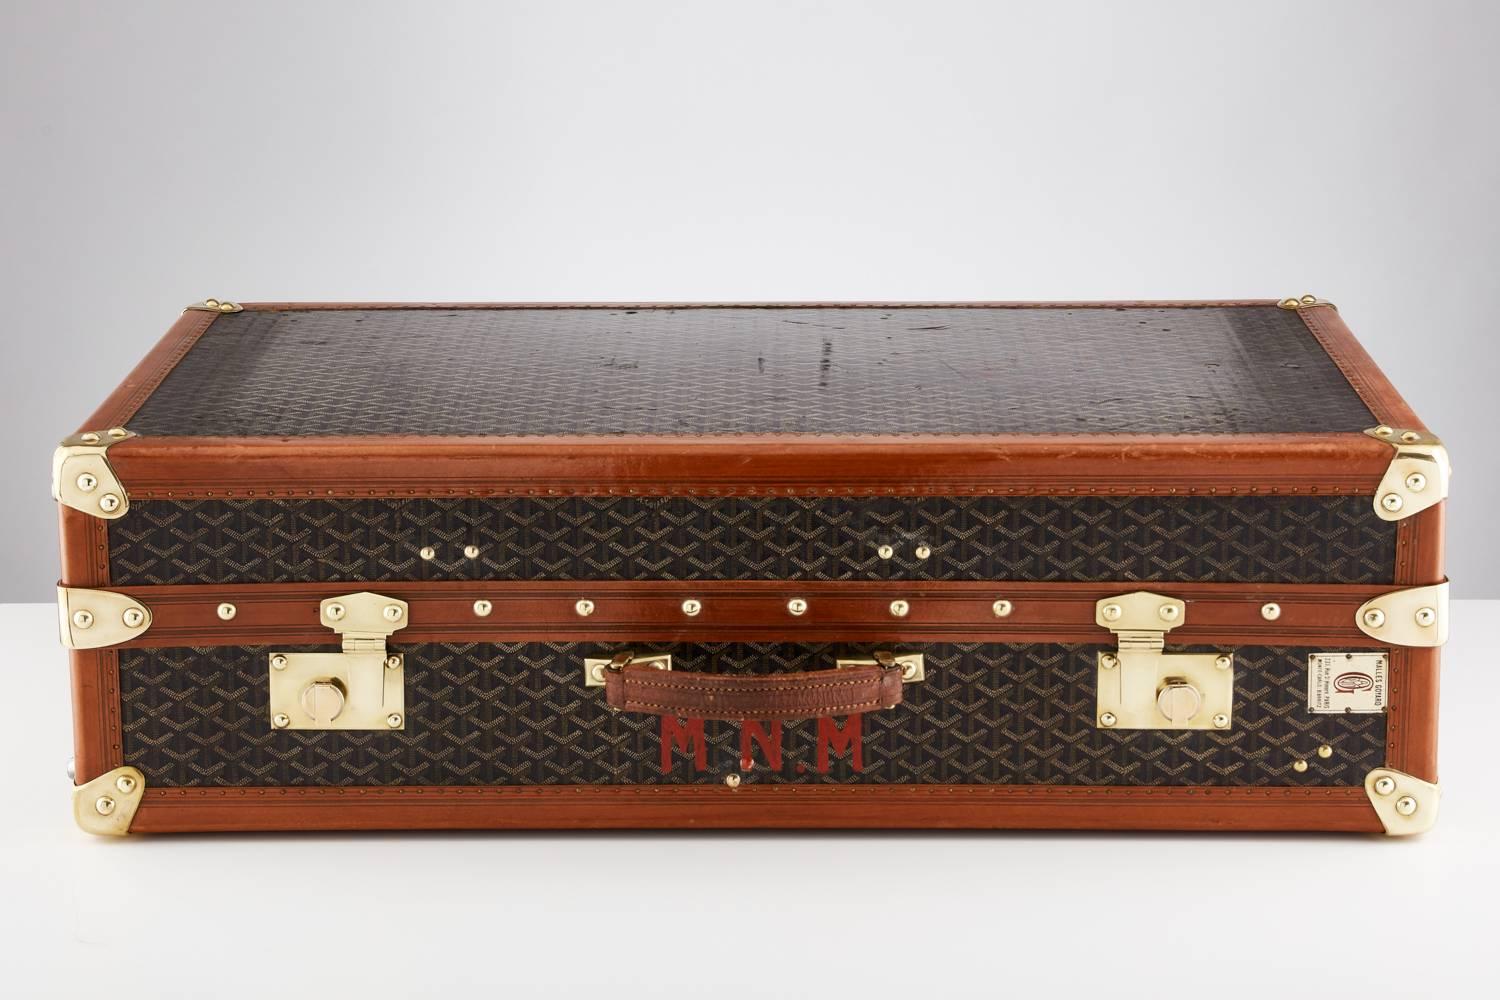 Une malle garde-robe Goyard du 20e siècle, vers 1930-1935.
Cette pièce de bagage magnifique est signée de part en part.
La quincaillerie, en particulier les serrures, est de très bonne qualité.
L'intérieur comporte des tiroirs, avec les mots Goyard